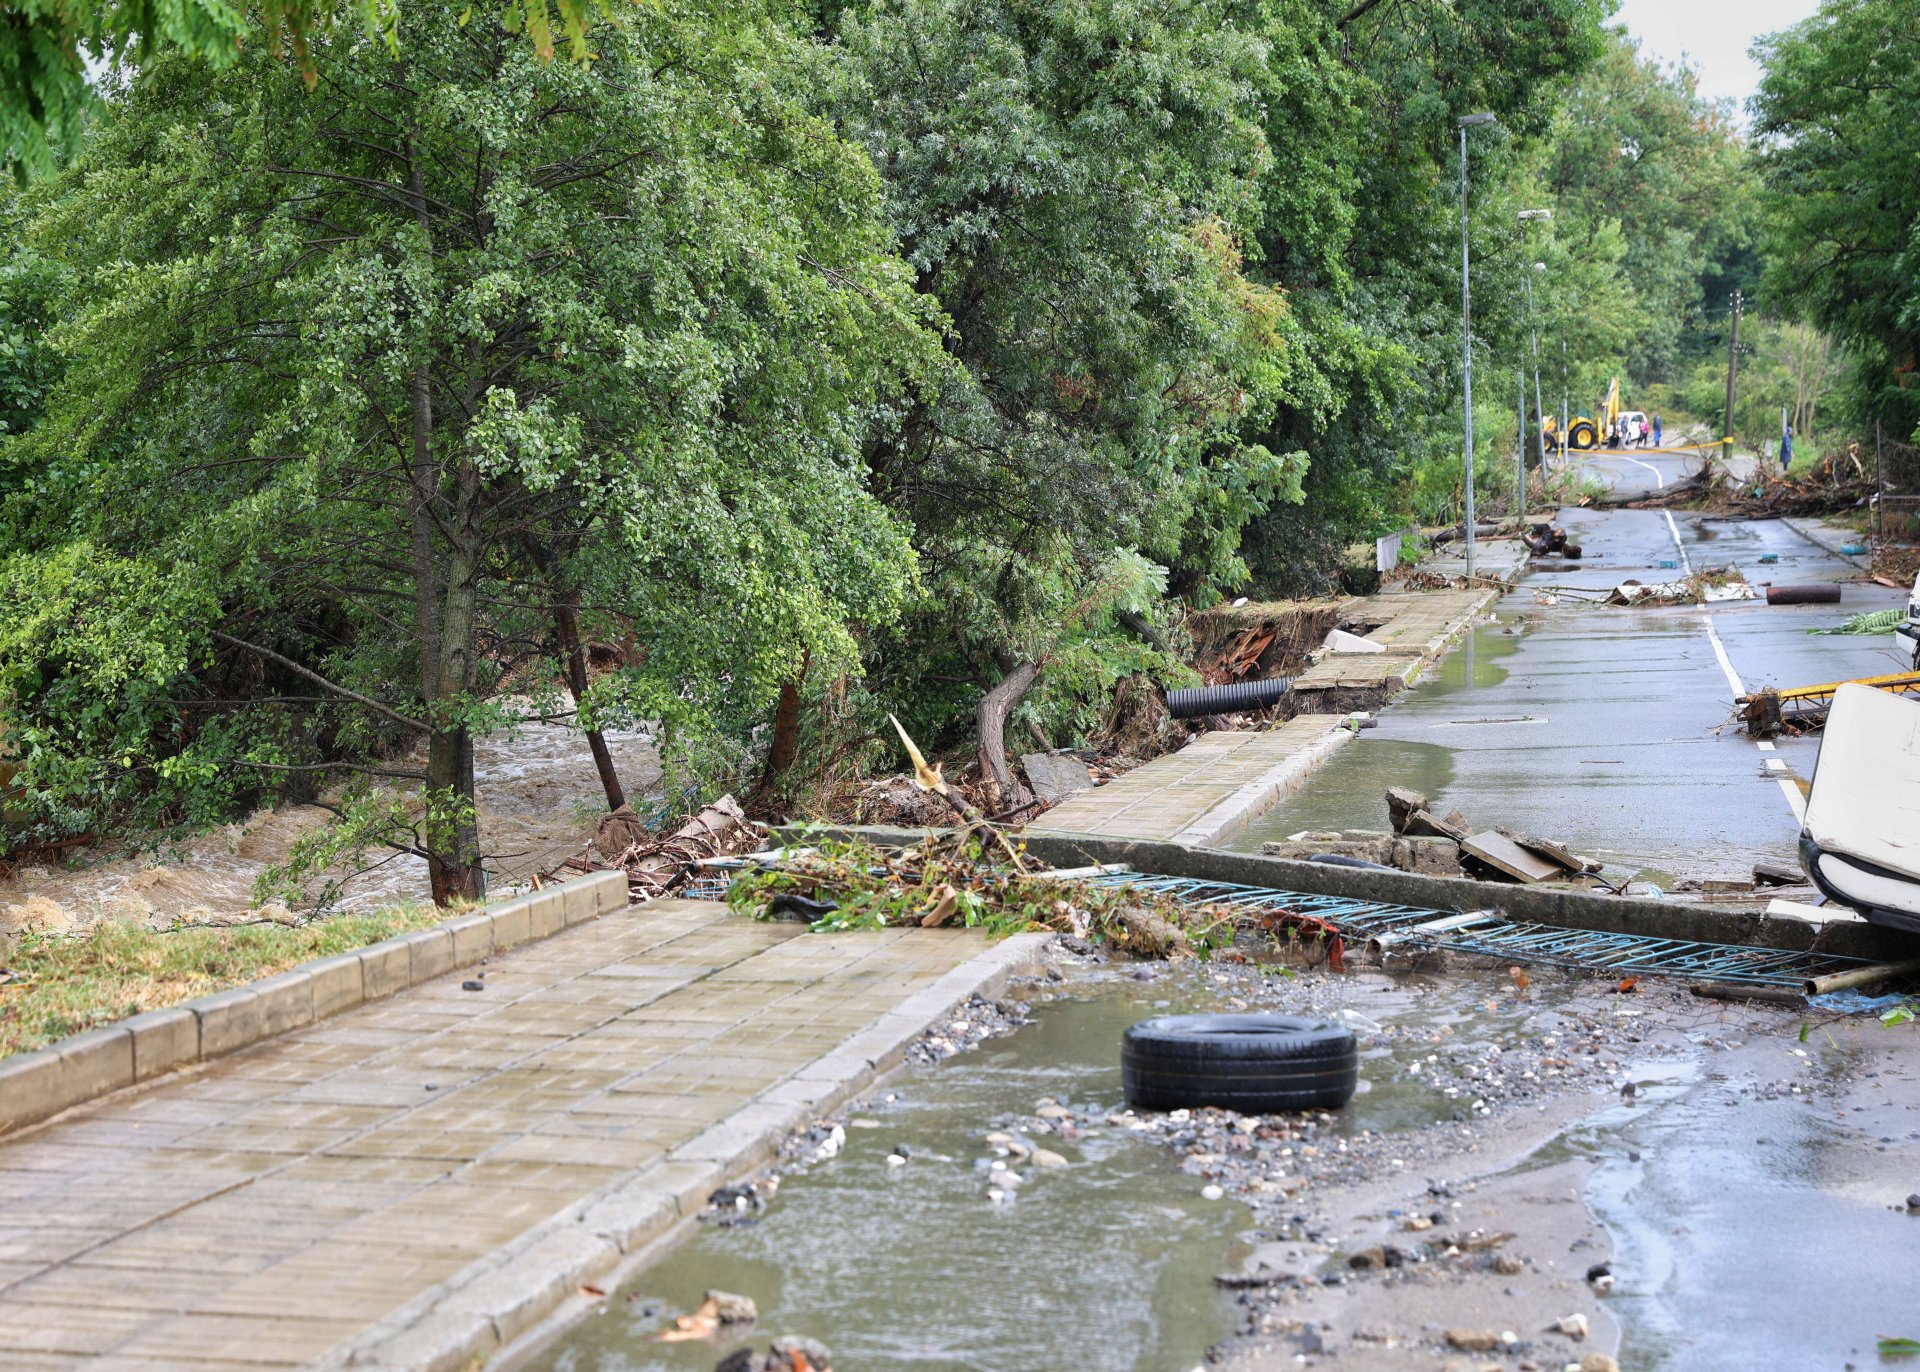 5 септември. След обилните дъждове в Община Царево е обявено бедствено положение. Наводнени са улици, къщи, скъсани мостове, затворени пътища и прелели реки